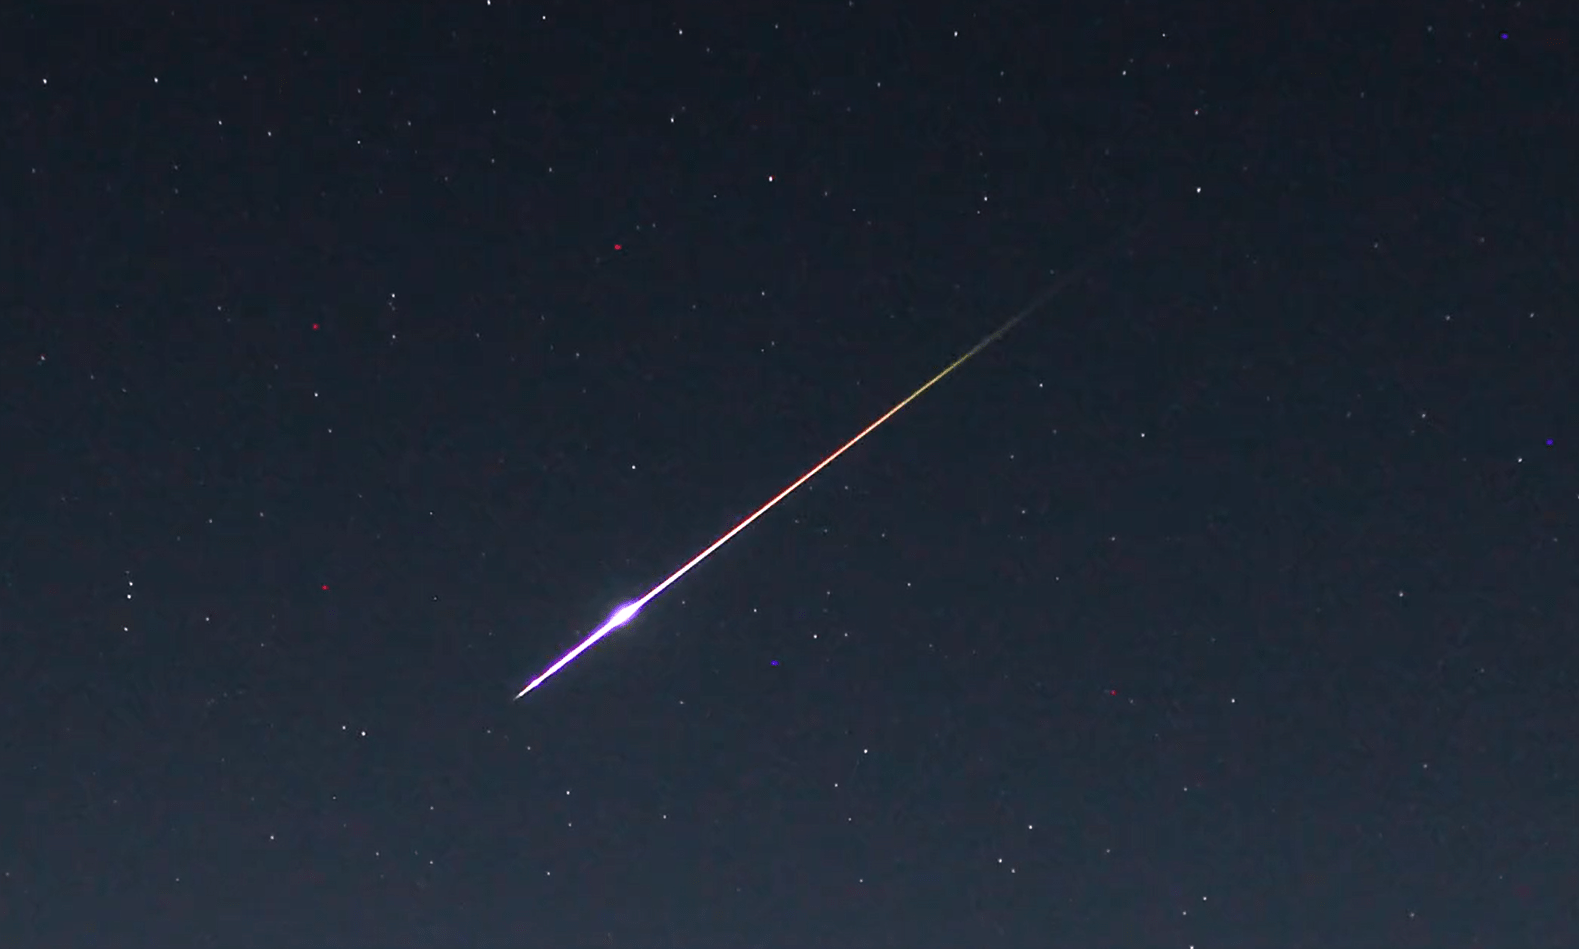 Βίντεο: Μετεωρίτης διασχίζει τον ουρανό της Πορτογαλίας και κάνει την νύχτα μέρα